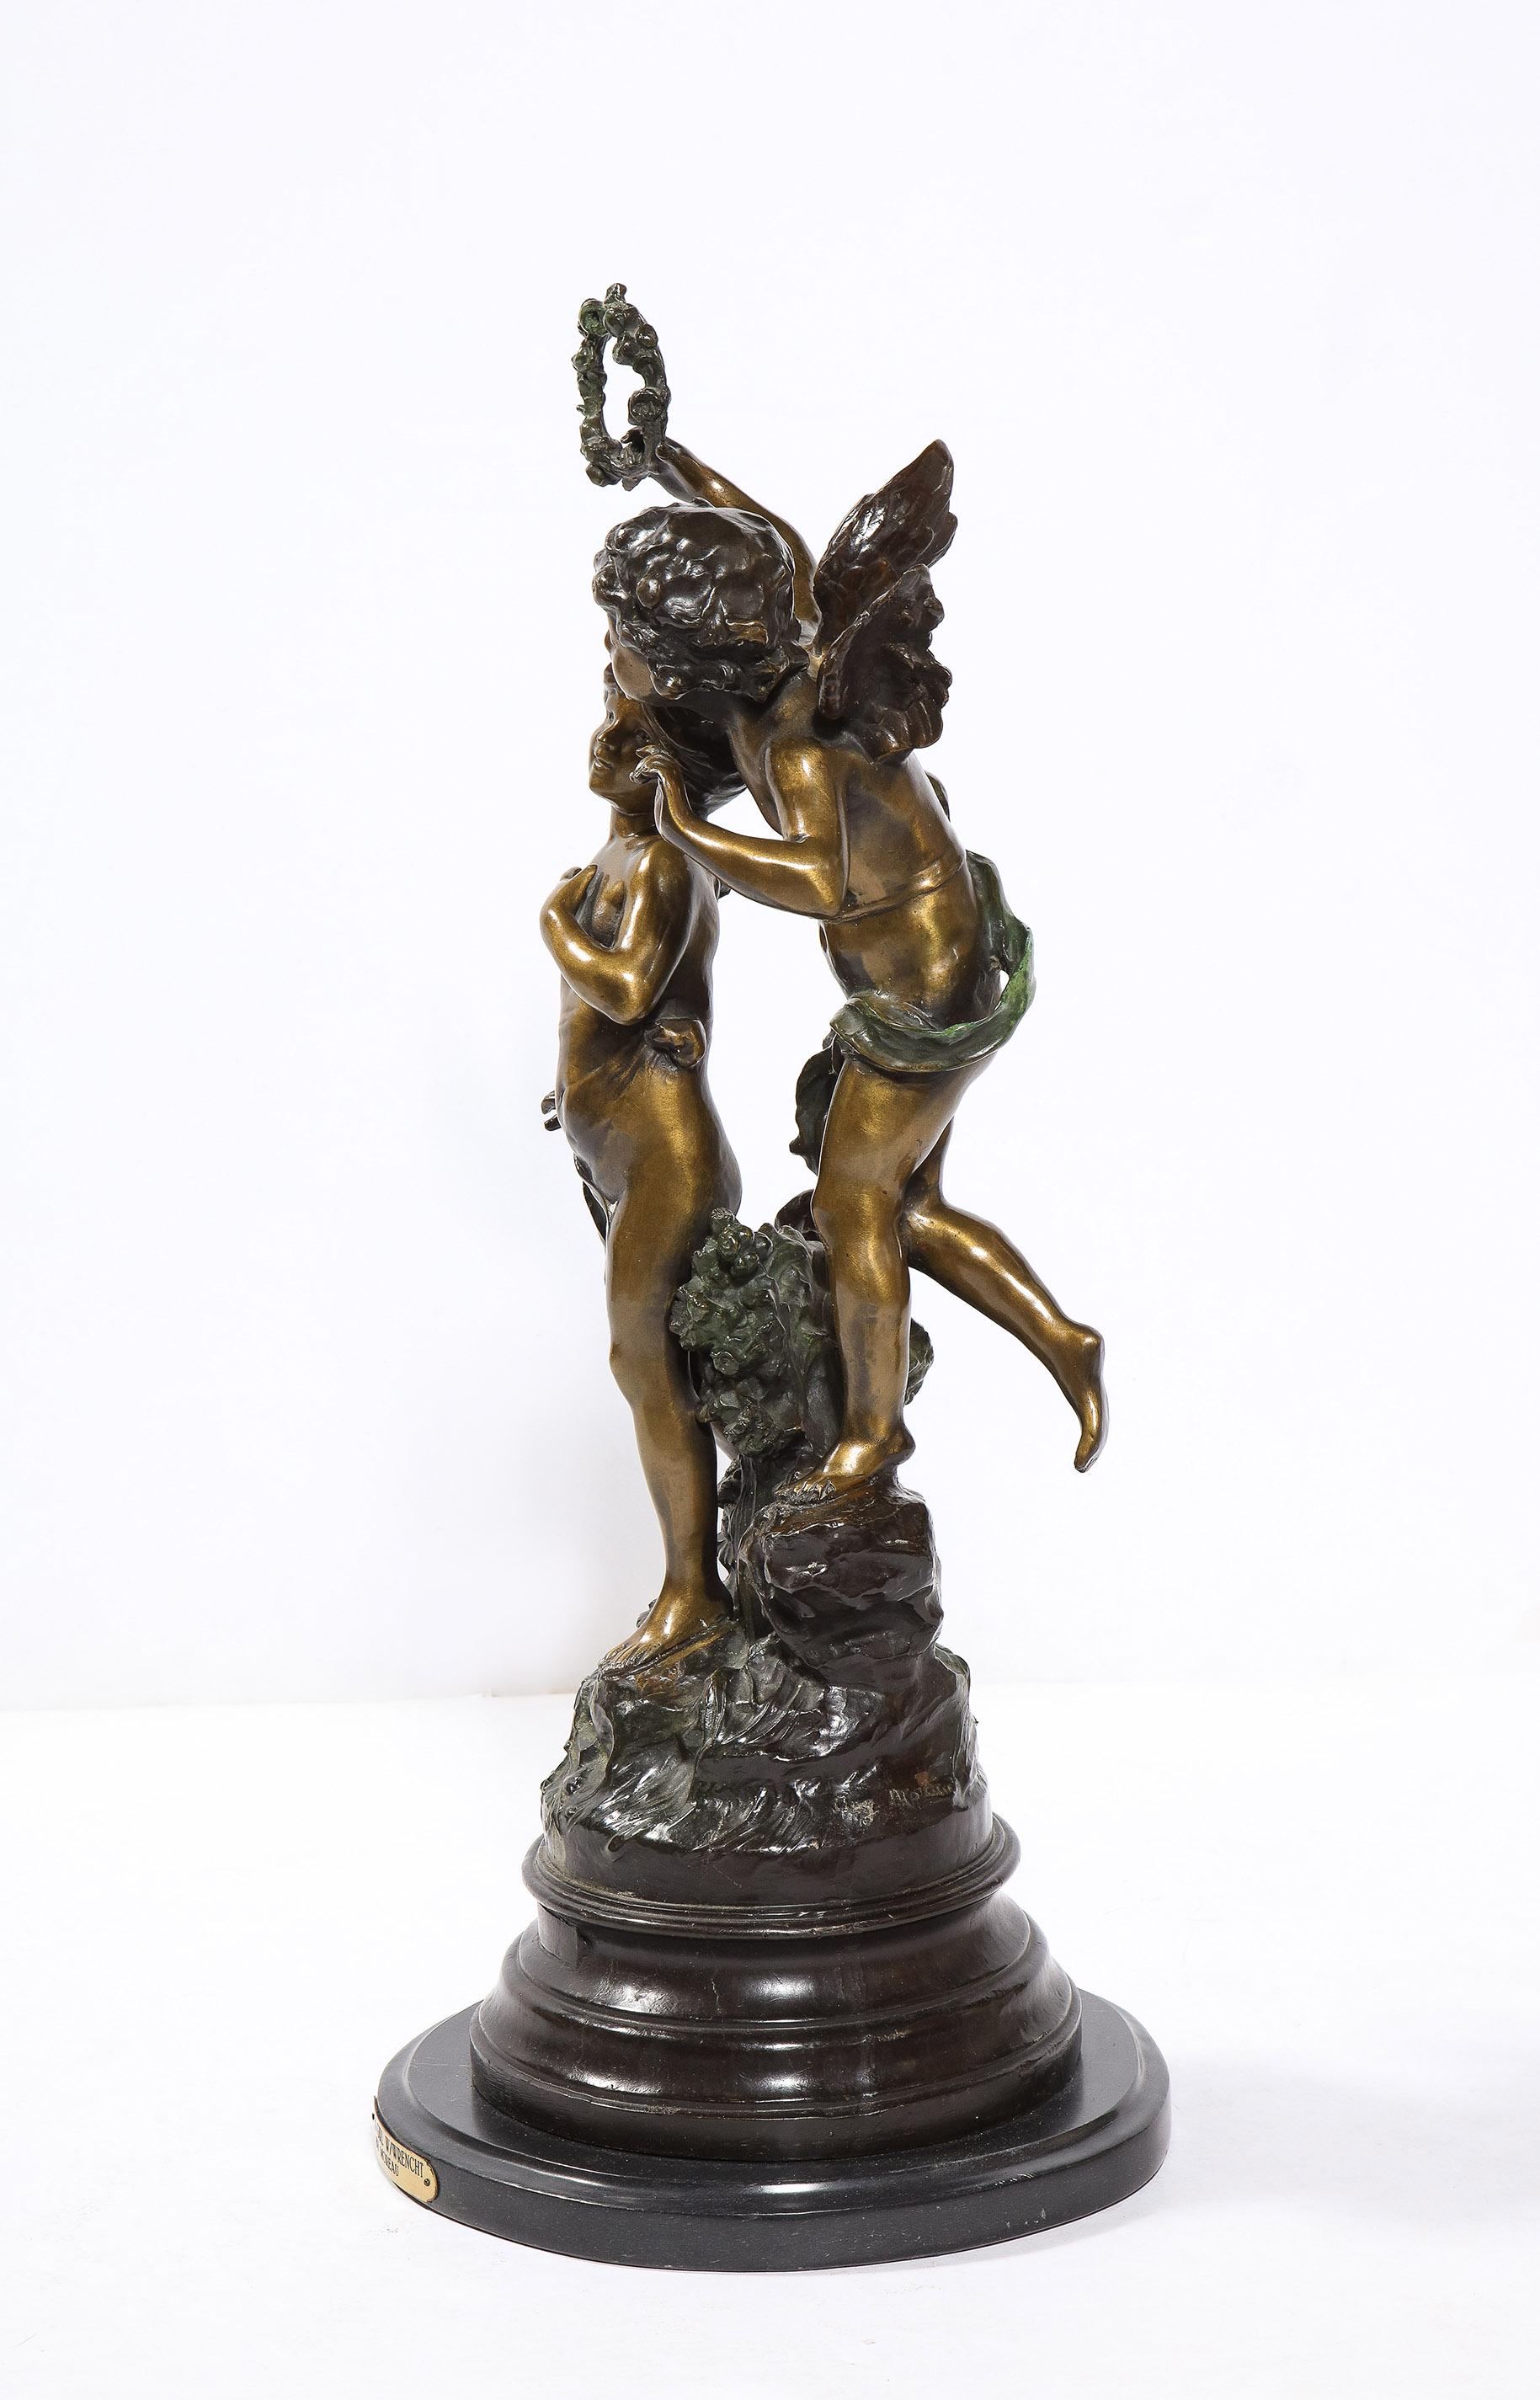 Die Bronzeskulptur mit zwei Patinas von Auguste Moreau zeigt einen geflügelten Jungen mit einem anderen Kind. Auf einem gestuften Sockel aus schwarzem Marmor.
Unterzeichnet AUG. Moreau bei der Besetzung.